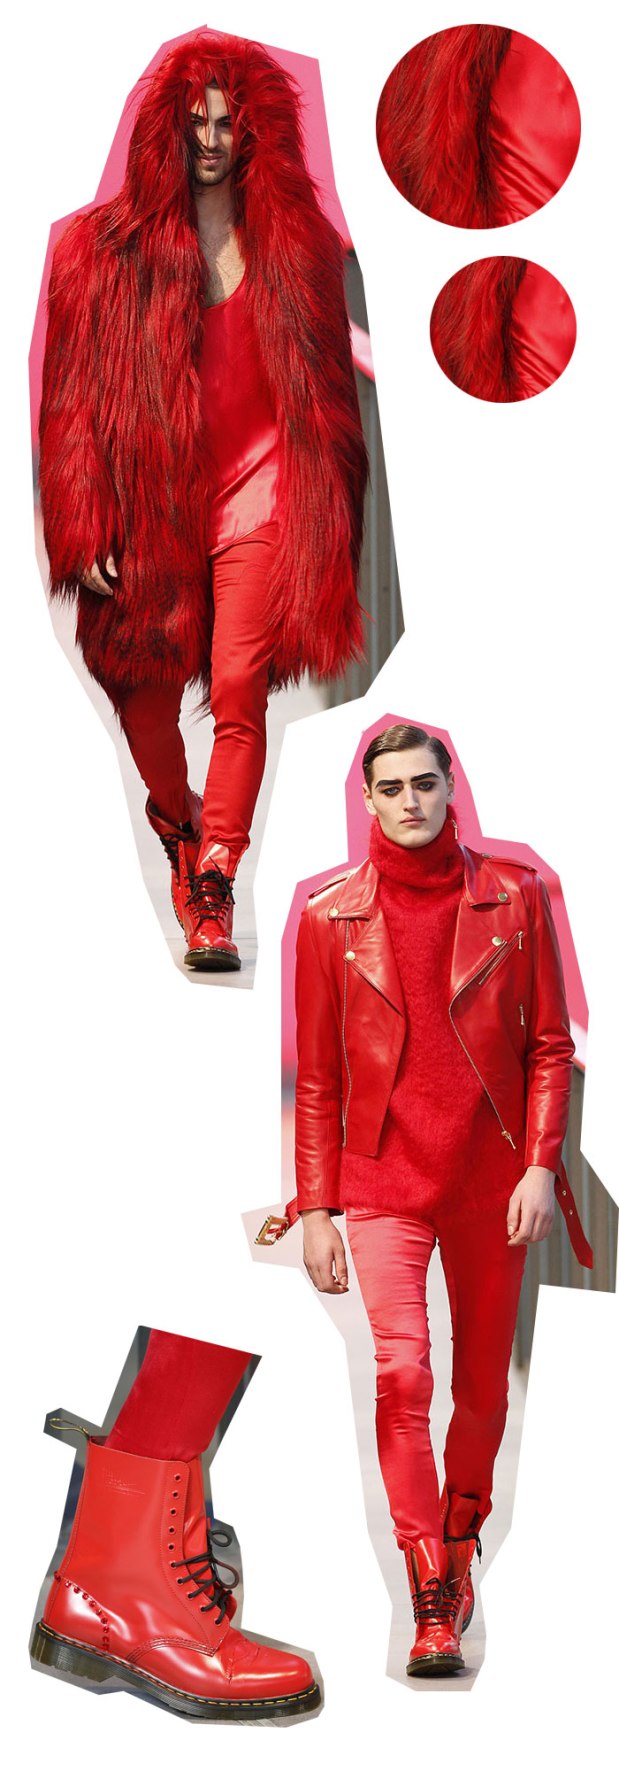 albeniz-080-barcelona-fashion-fw2014-2015-men-collection-modaddiction-8